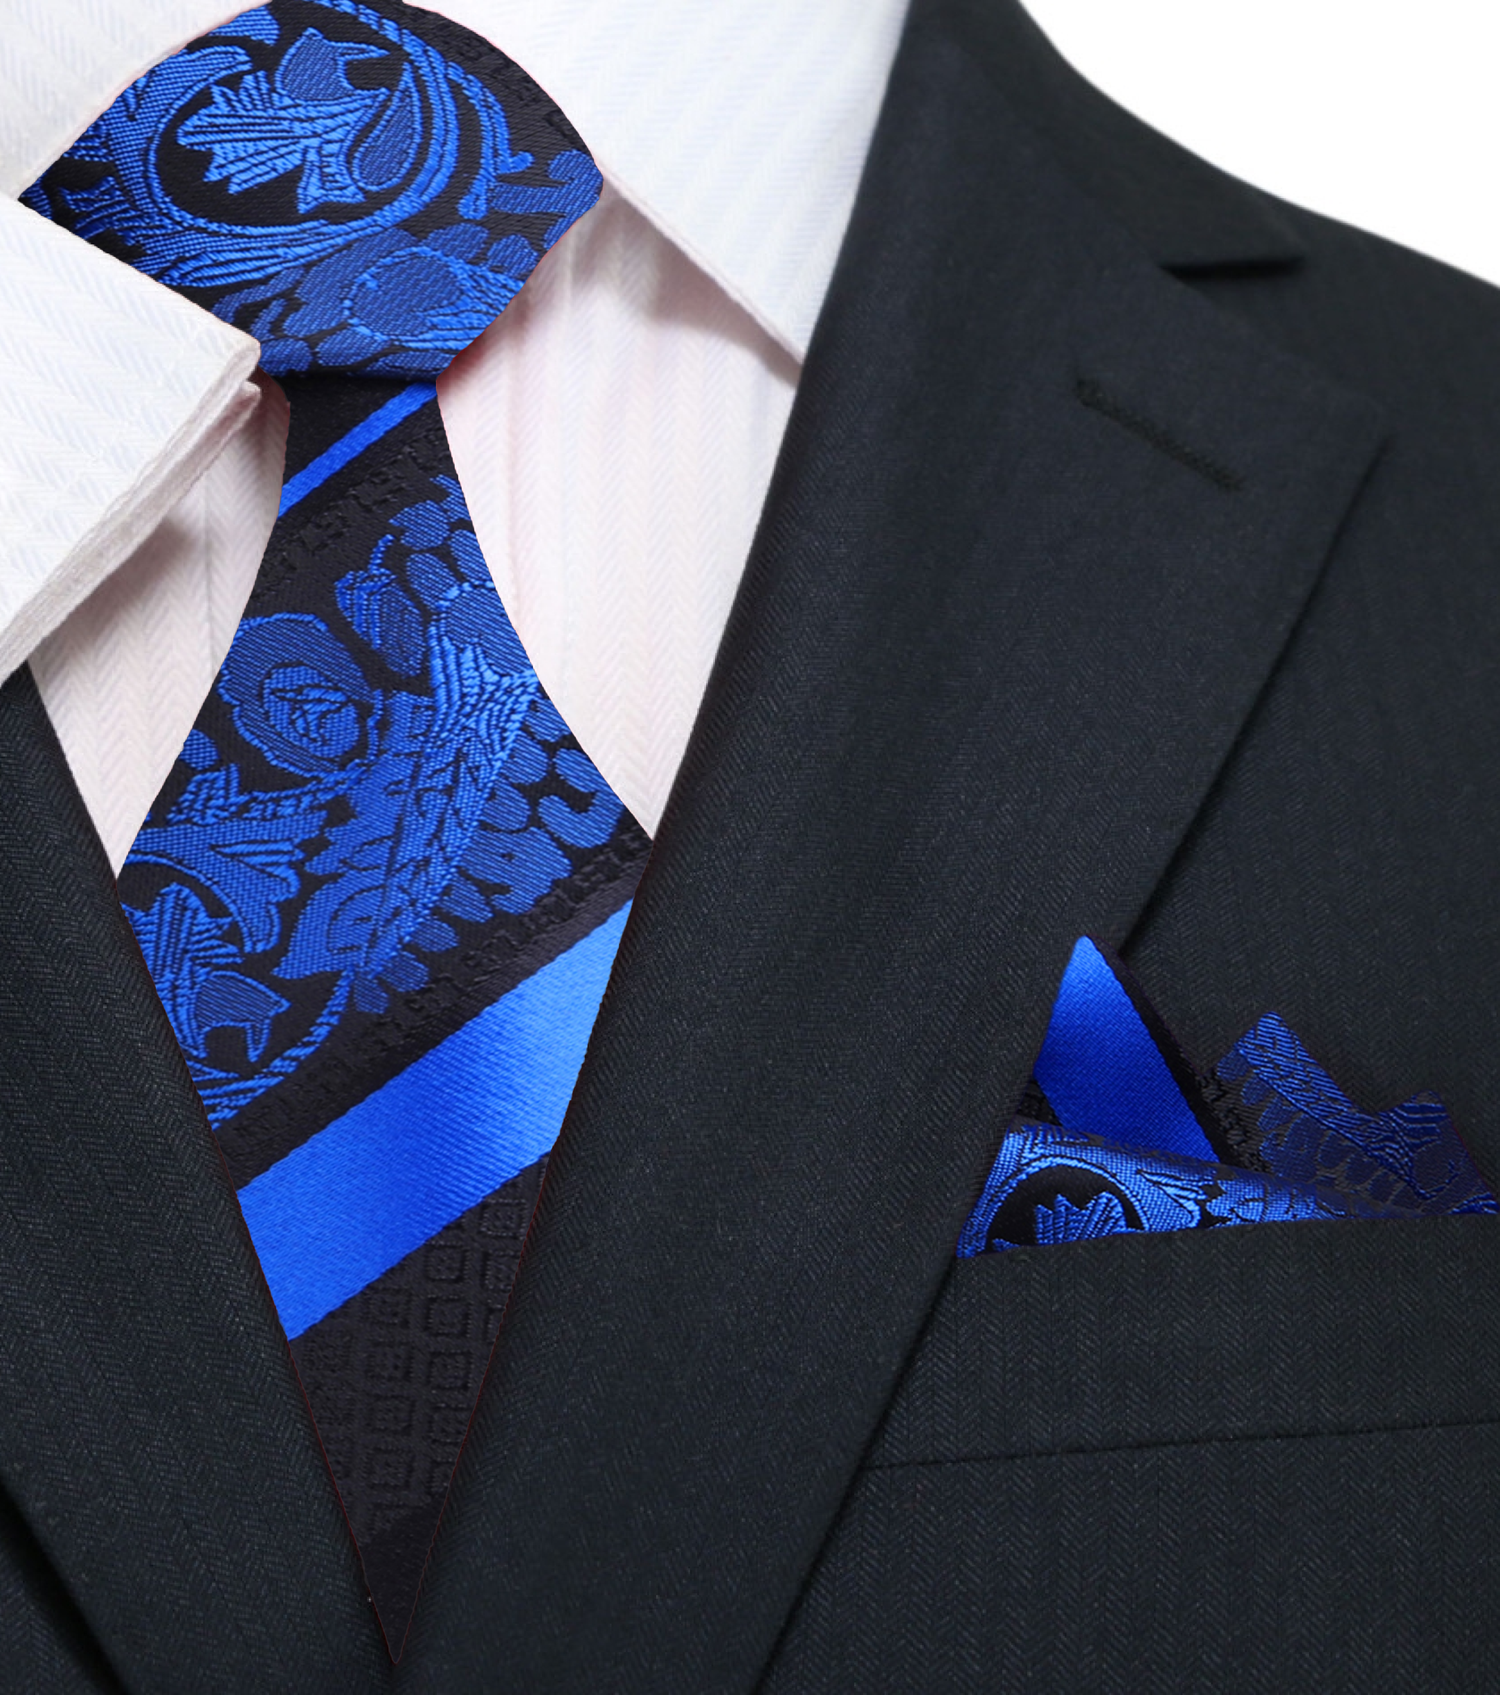 black, blue floral tie and pocket square||Blue, Black